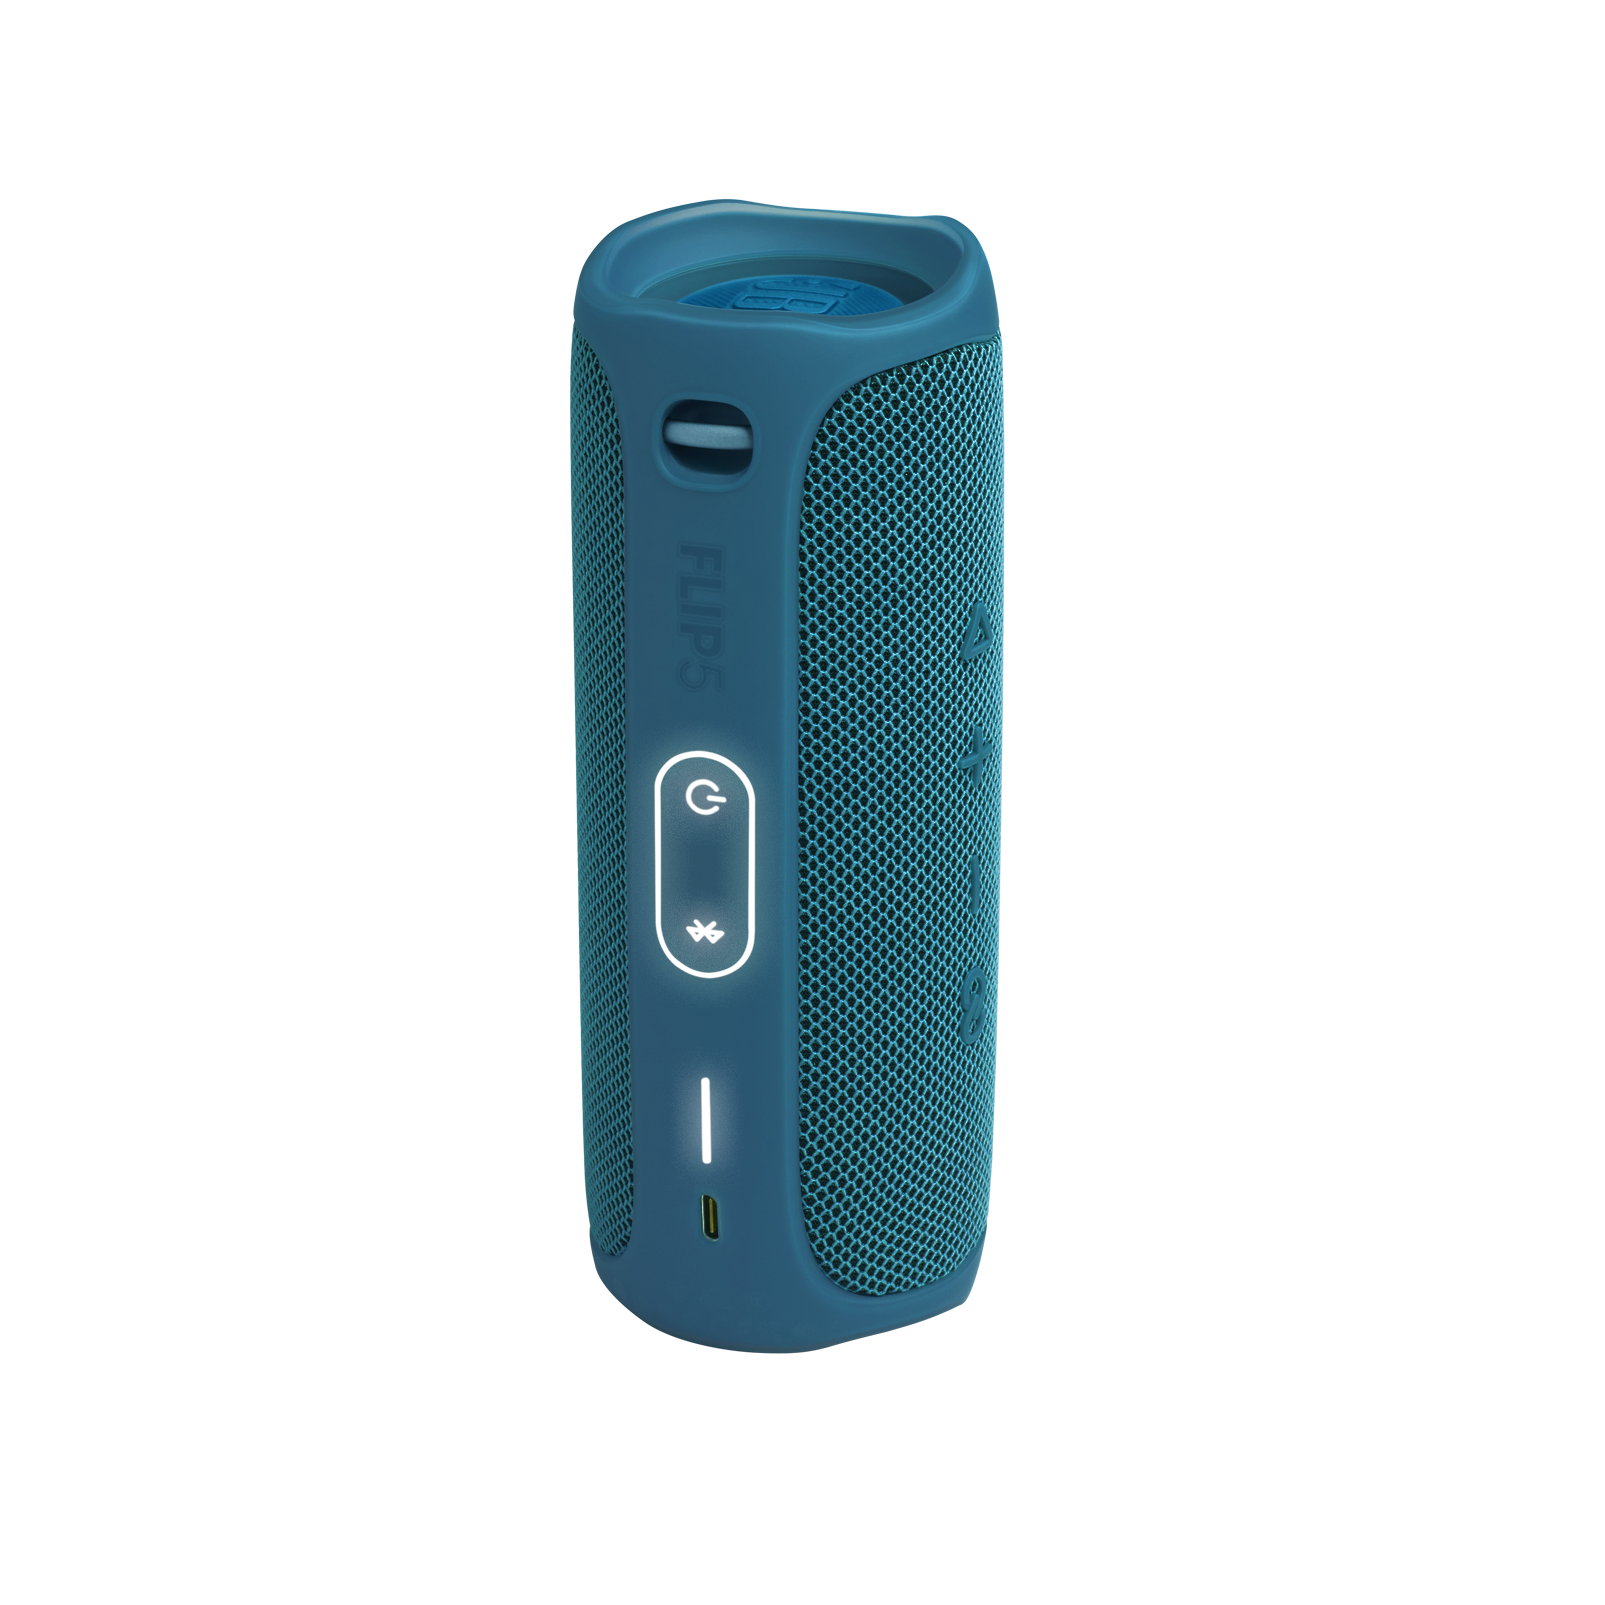 Composée à 90% de plastique recyclé Étanchéité IPX7 pour piscine et plage Couleur : Bleu océan Enceinte Bluetooth portable JBL Flip 5 Eco Son signature JBL 